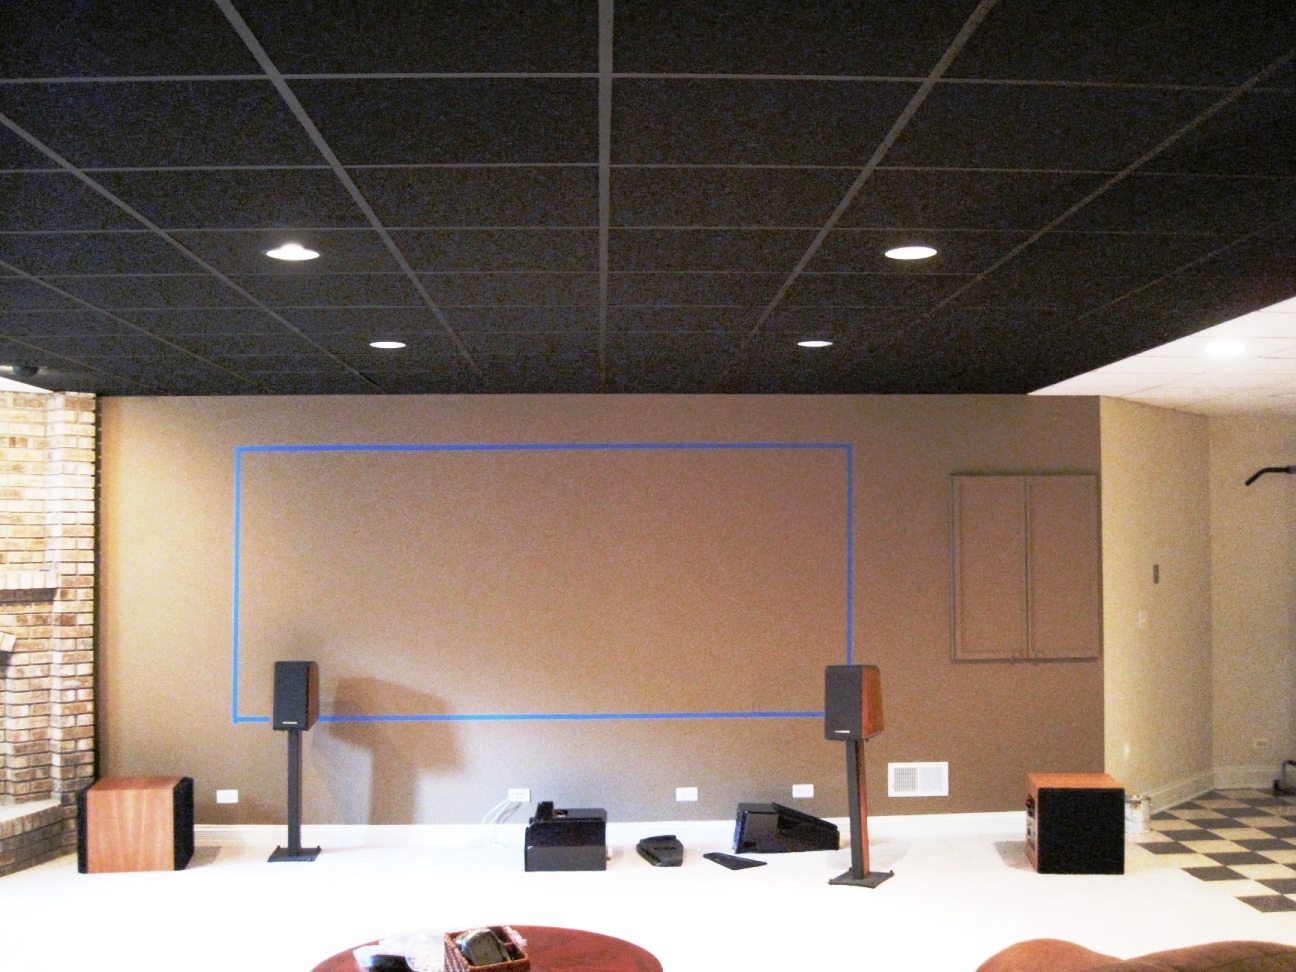 Black Acoustic Ceiling Tiles 2x4 Black Acoustic Ceiling Tiles 2×4 black ceiling tiles 1296 X 972